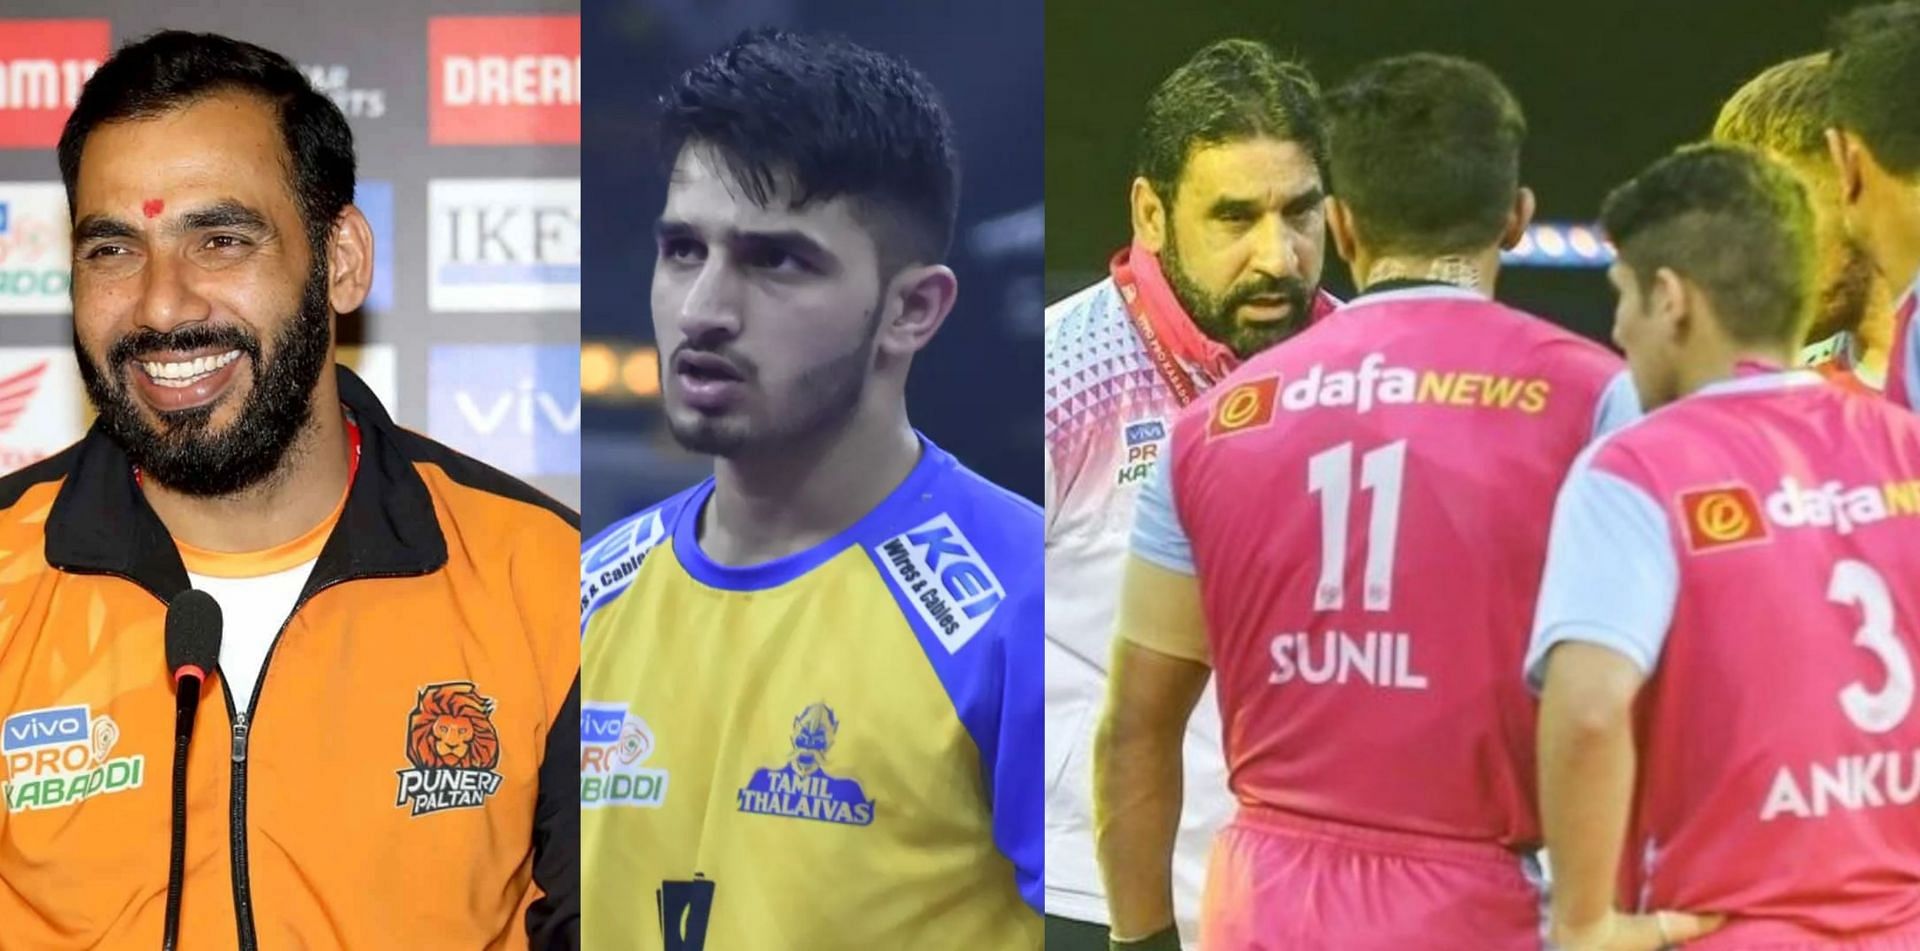 Junior Kabaddi World Championship के लिए भारतीय टीम में कौन से खिलाड़ी शामिल?